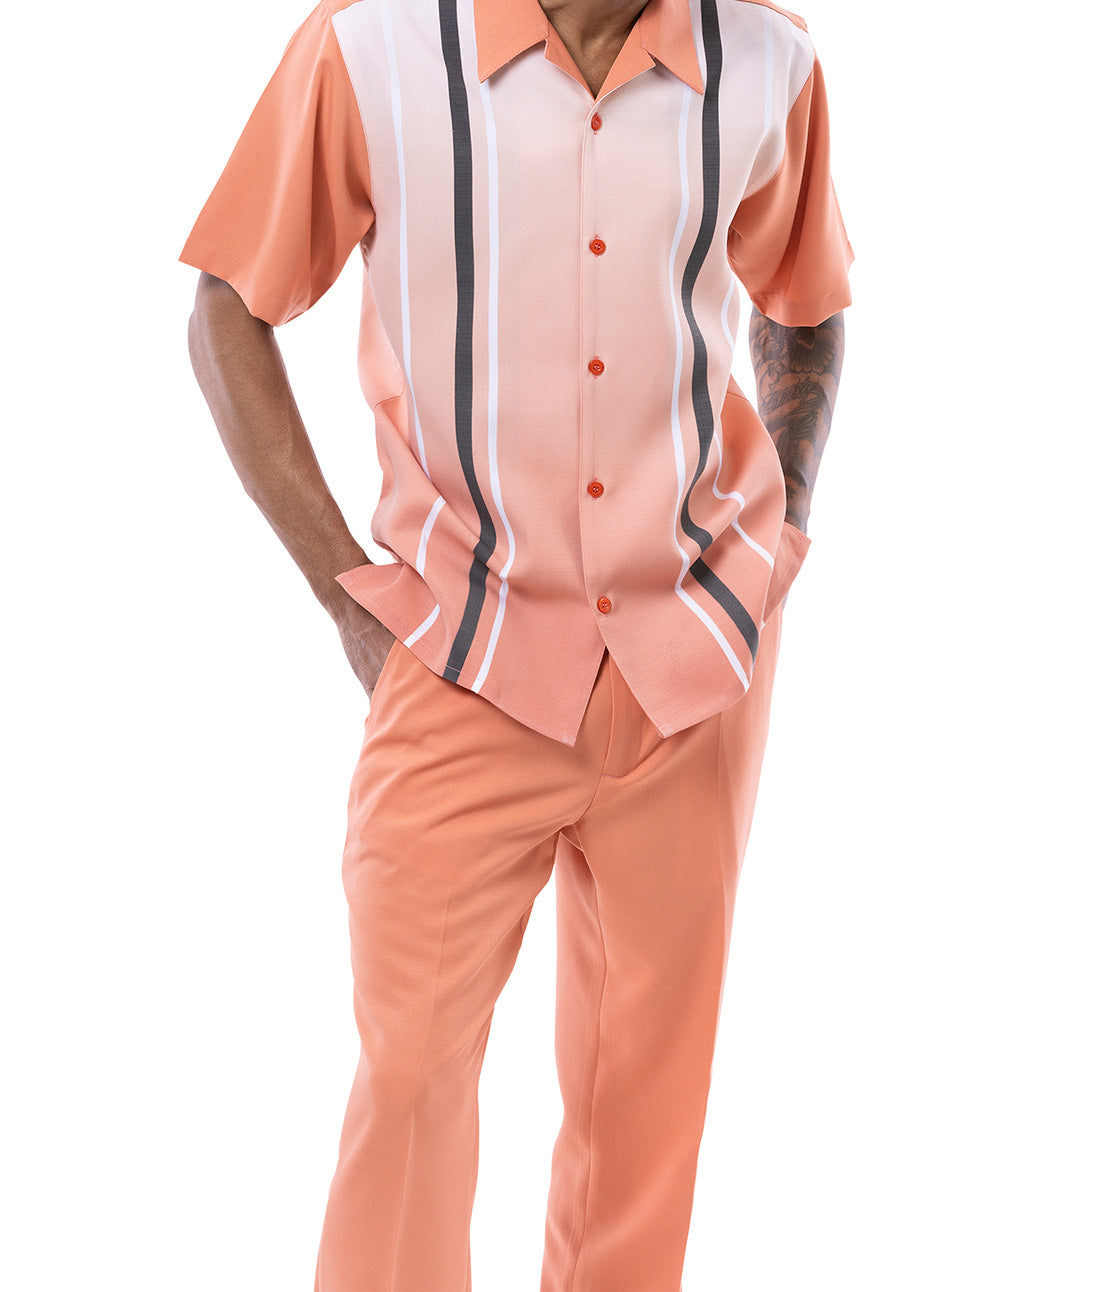 Apricot Gradient Color with Stripes Walking Suit 2 Piece Short Sleeve Set